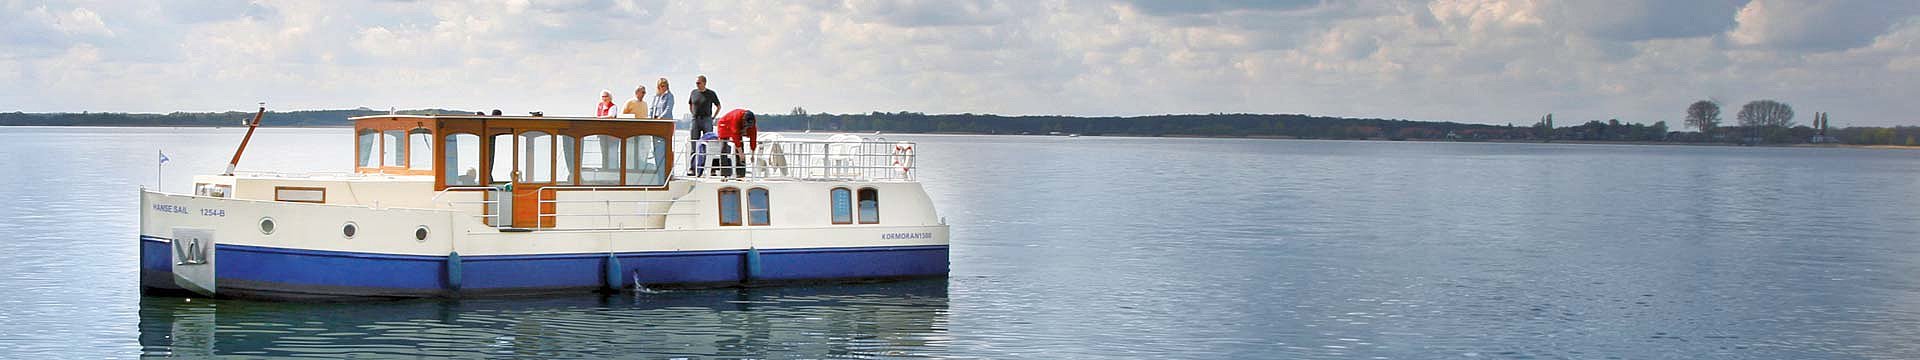 Das Hausboot Kormoran 1500 zeigt sich auf einen der vielen Seen der Mecklenburgischen Seenplatte von seiner besten Seite und erstrahlt im ruhigen Wasser.